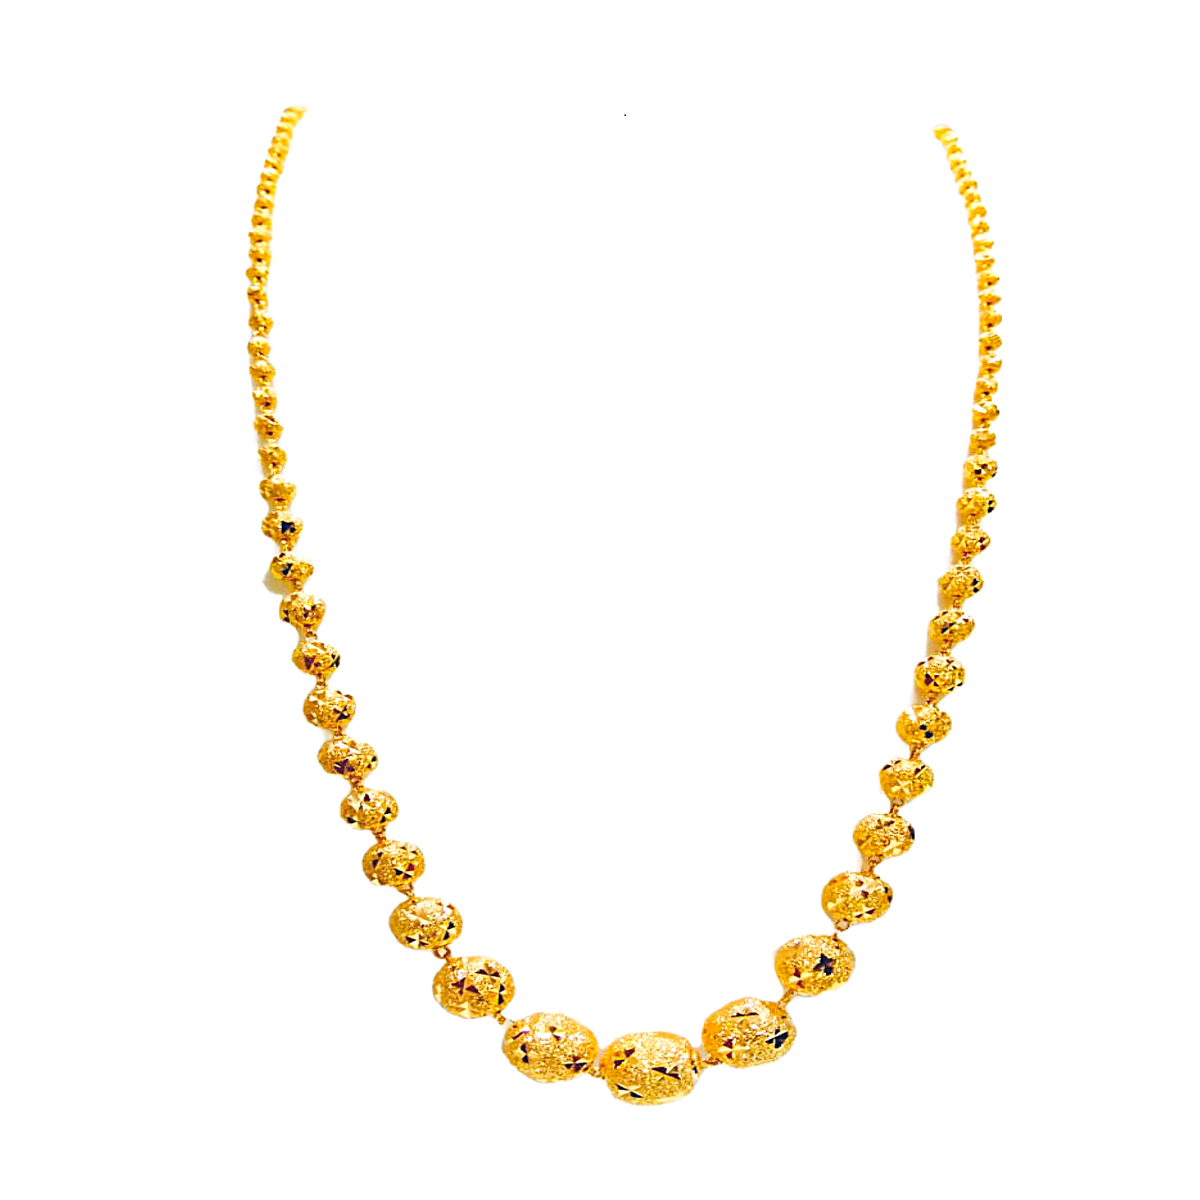 Golden Gossamer gold chain